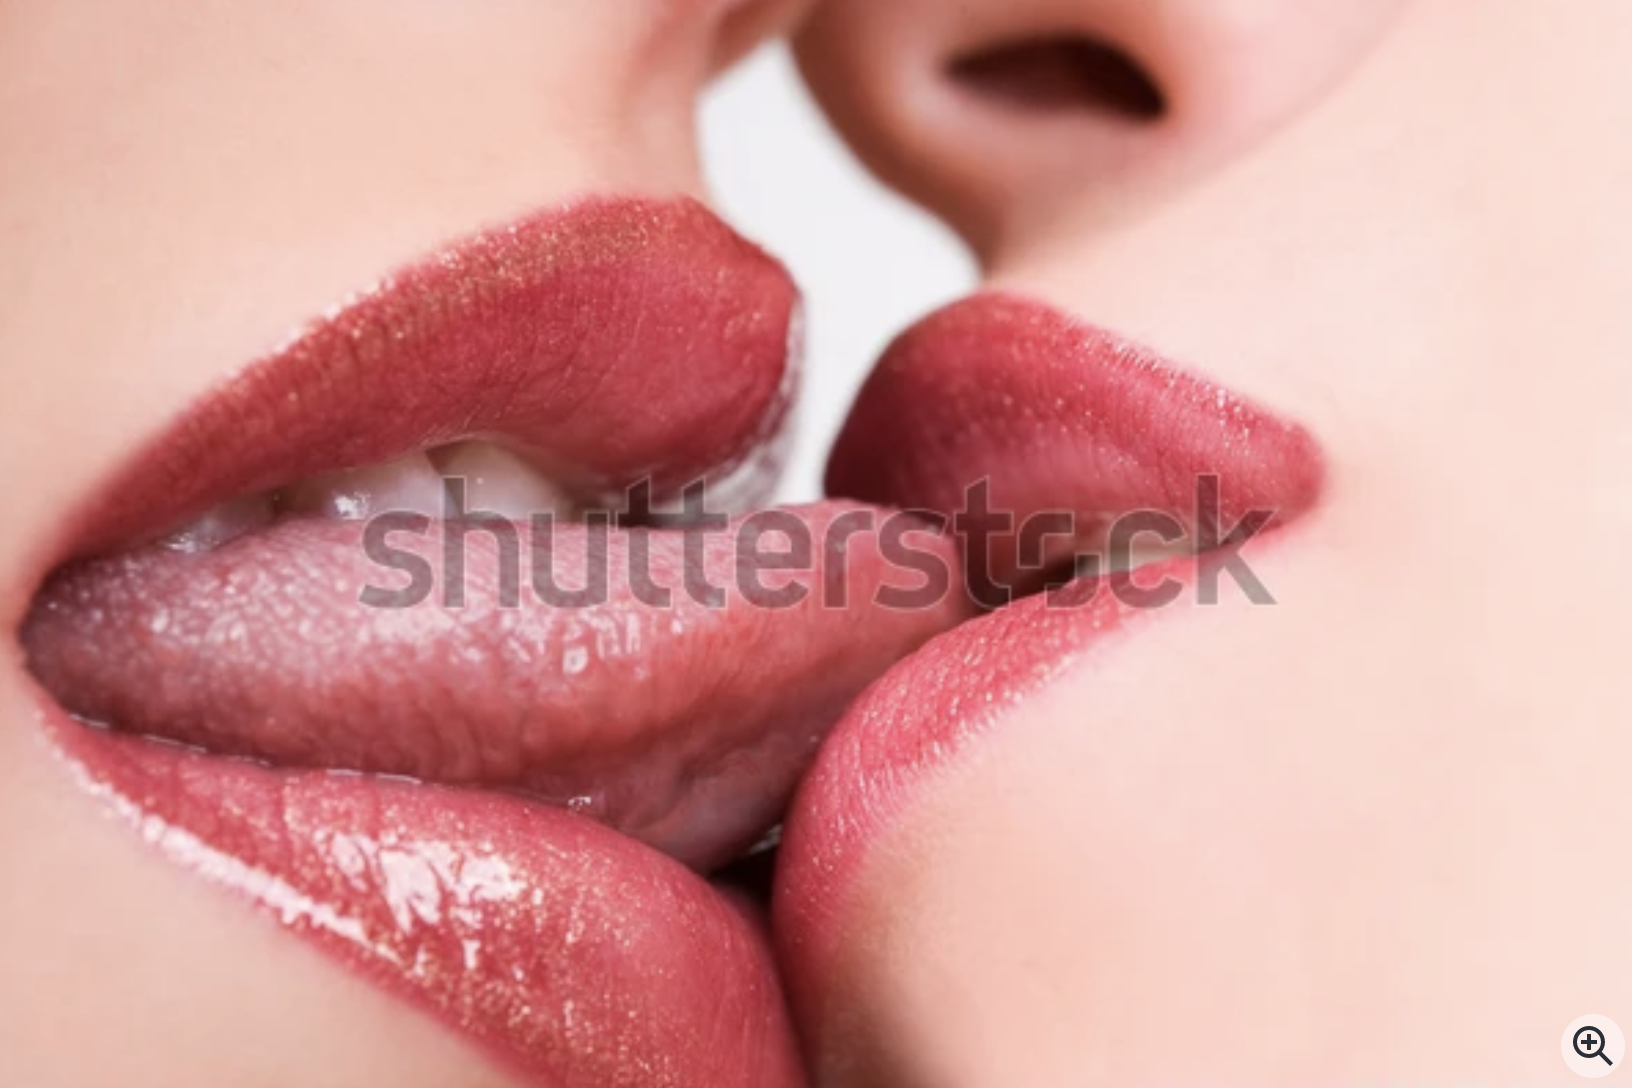 I want to kiss like lovers do